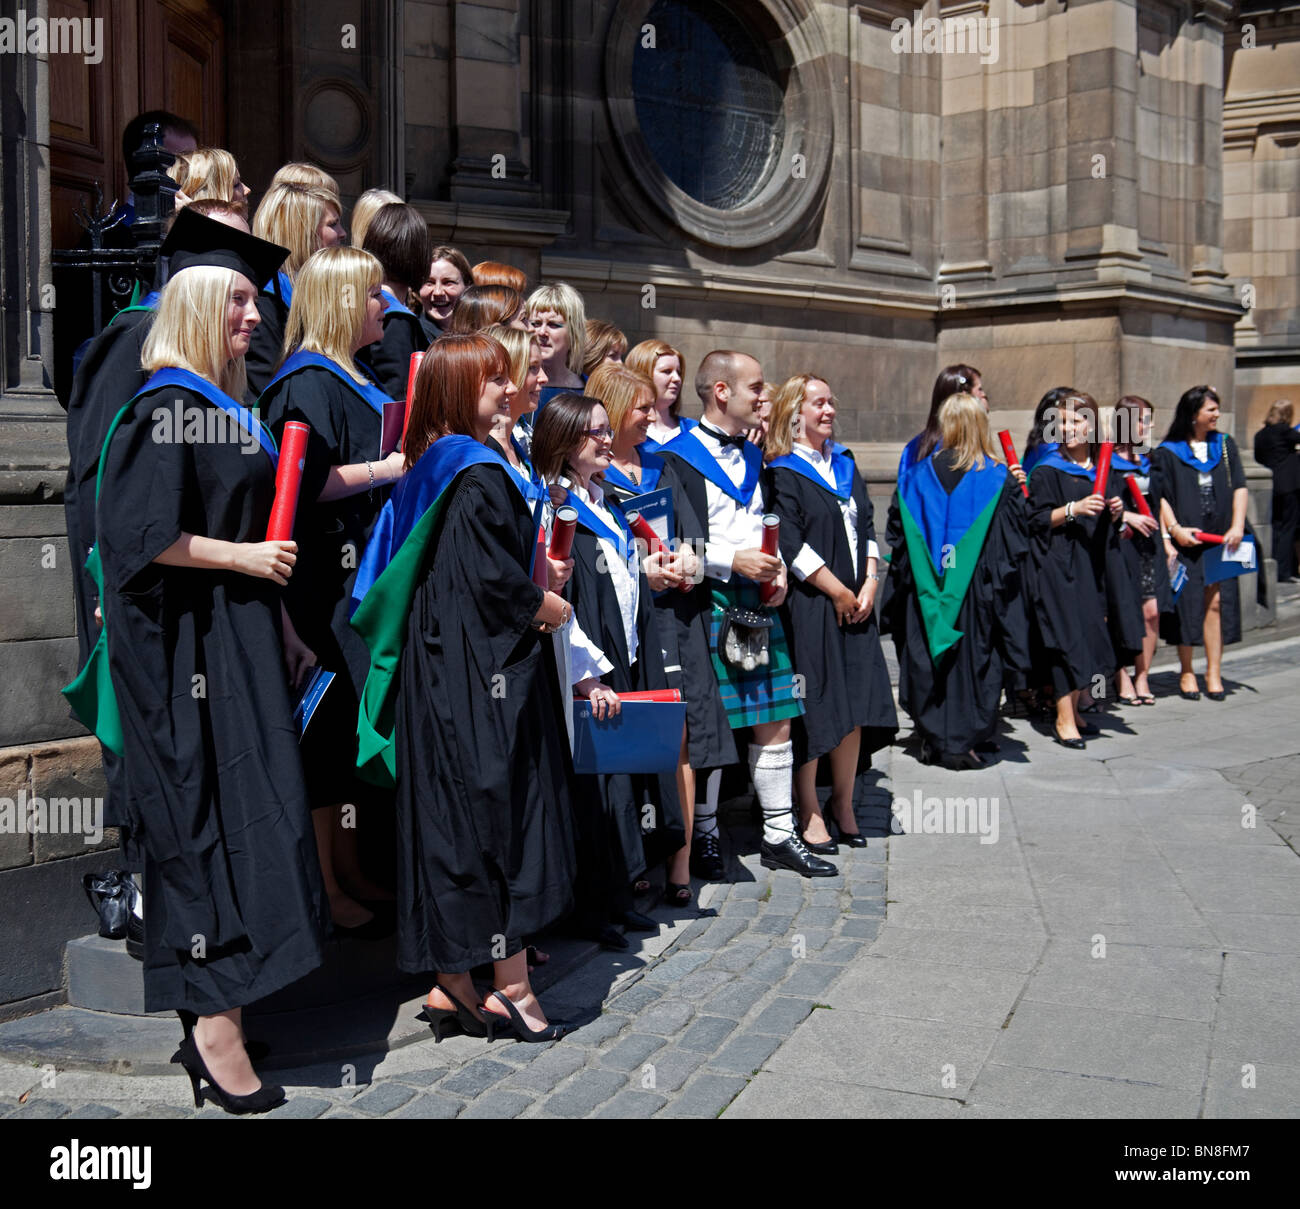 Les hommes et les femmes diplômés Les diplômés de l'Université d'Edimbourg, Ecosse, Royaume-Uni, Europe Banque D'Images